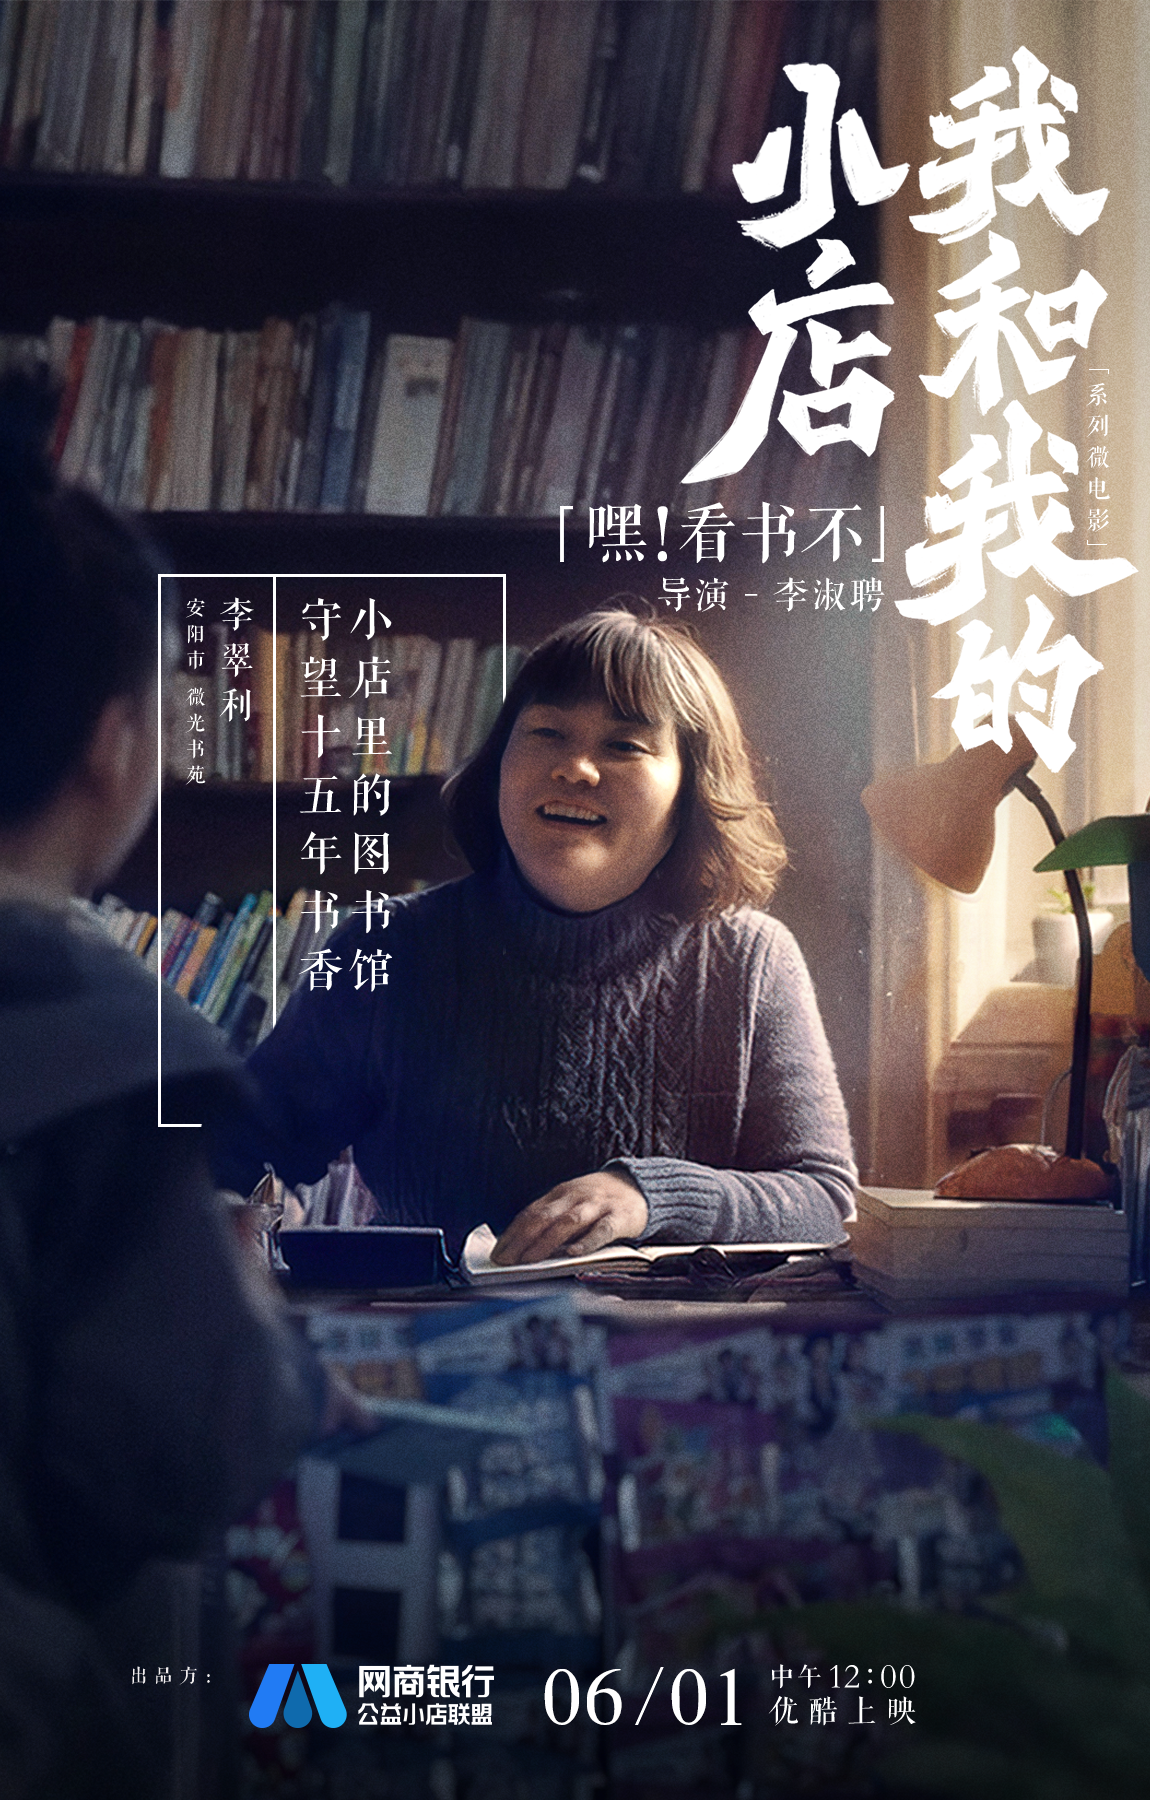 《我和我的小店》微电影上映 中国式人情温暖治愈